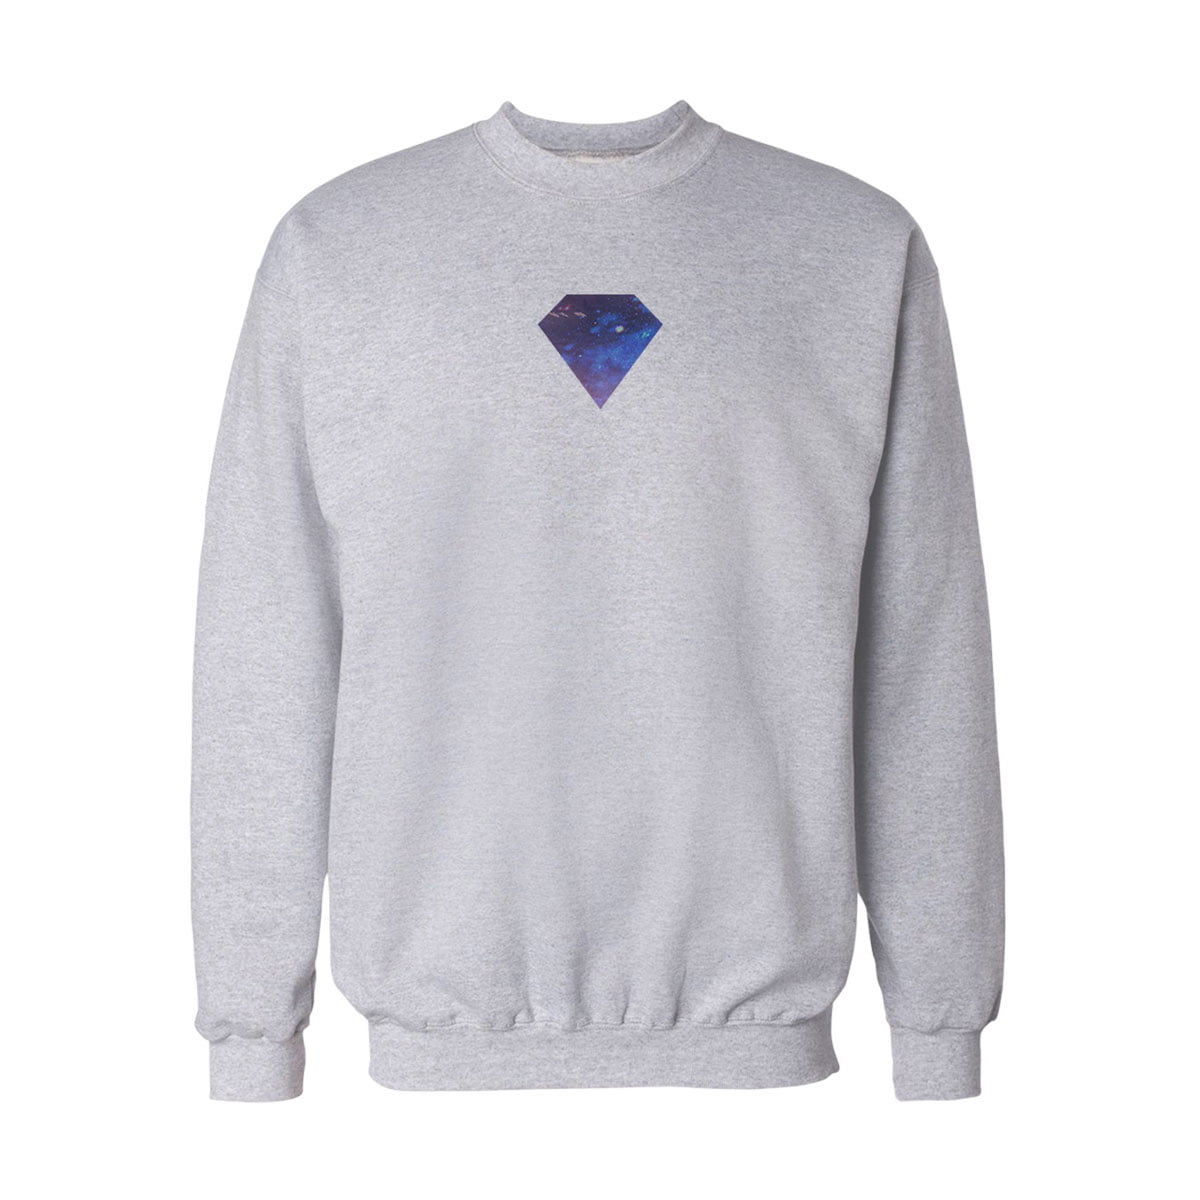 Diamond yildiz sweatshirt b - yıldız desenli diamond sweatshirt - figurex